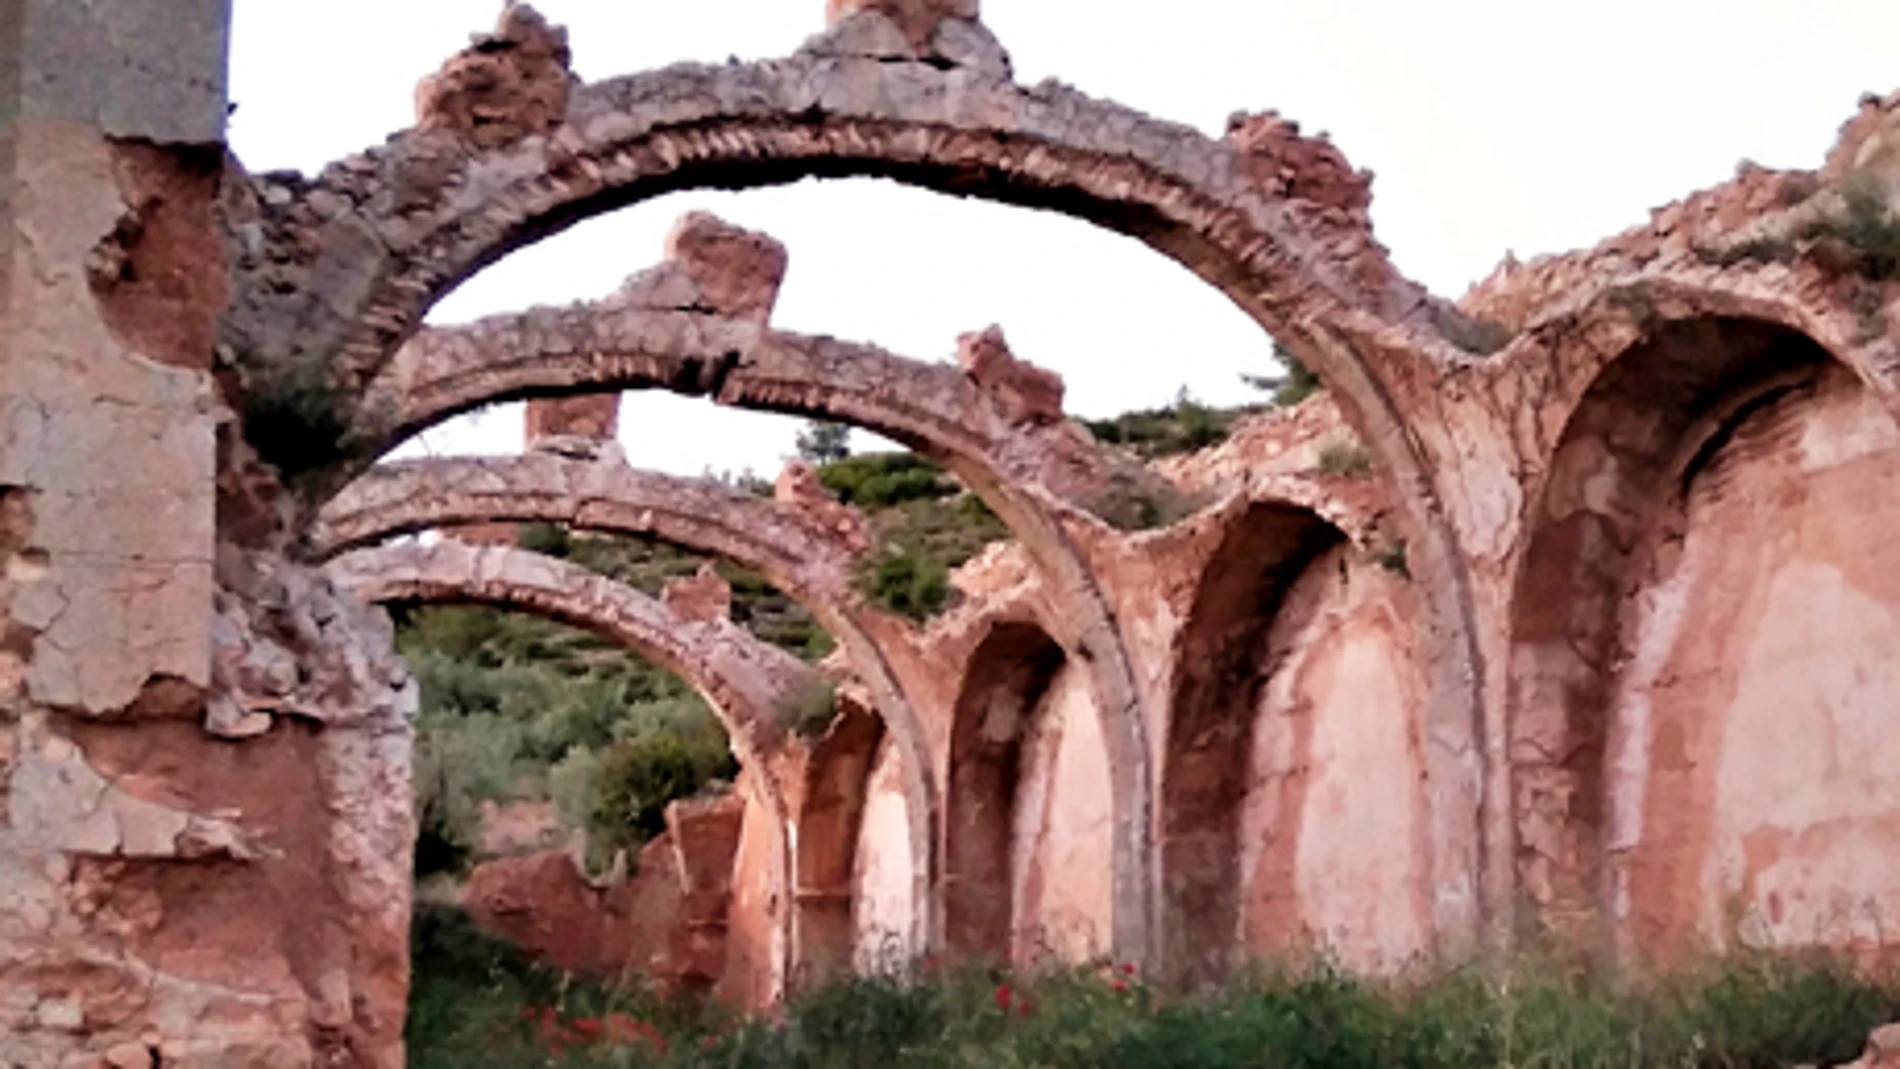 Ermita de San Roque en la localidad valenciana de Ayora